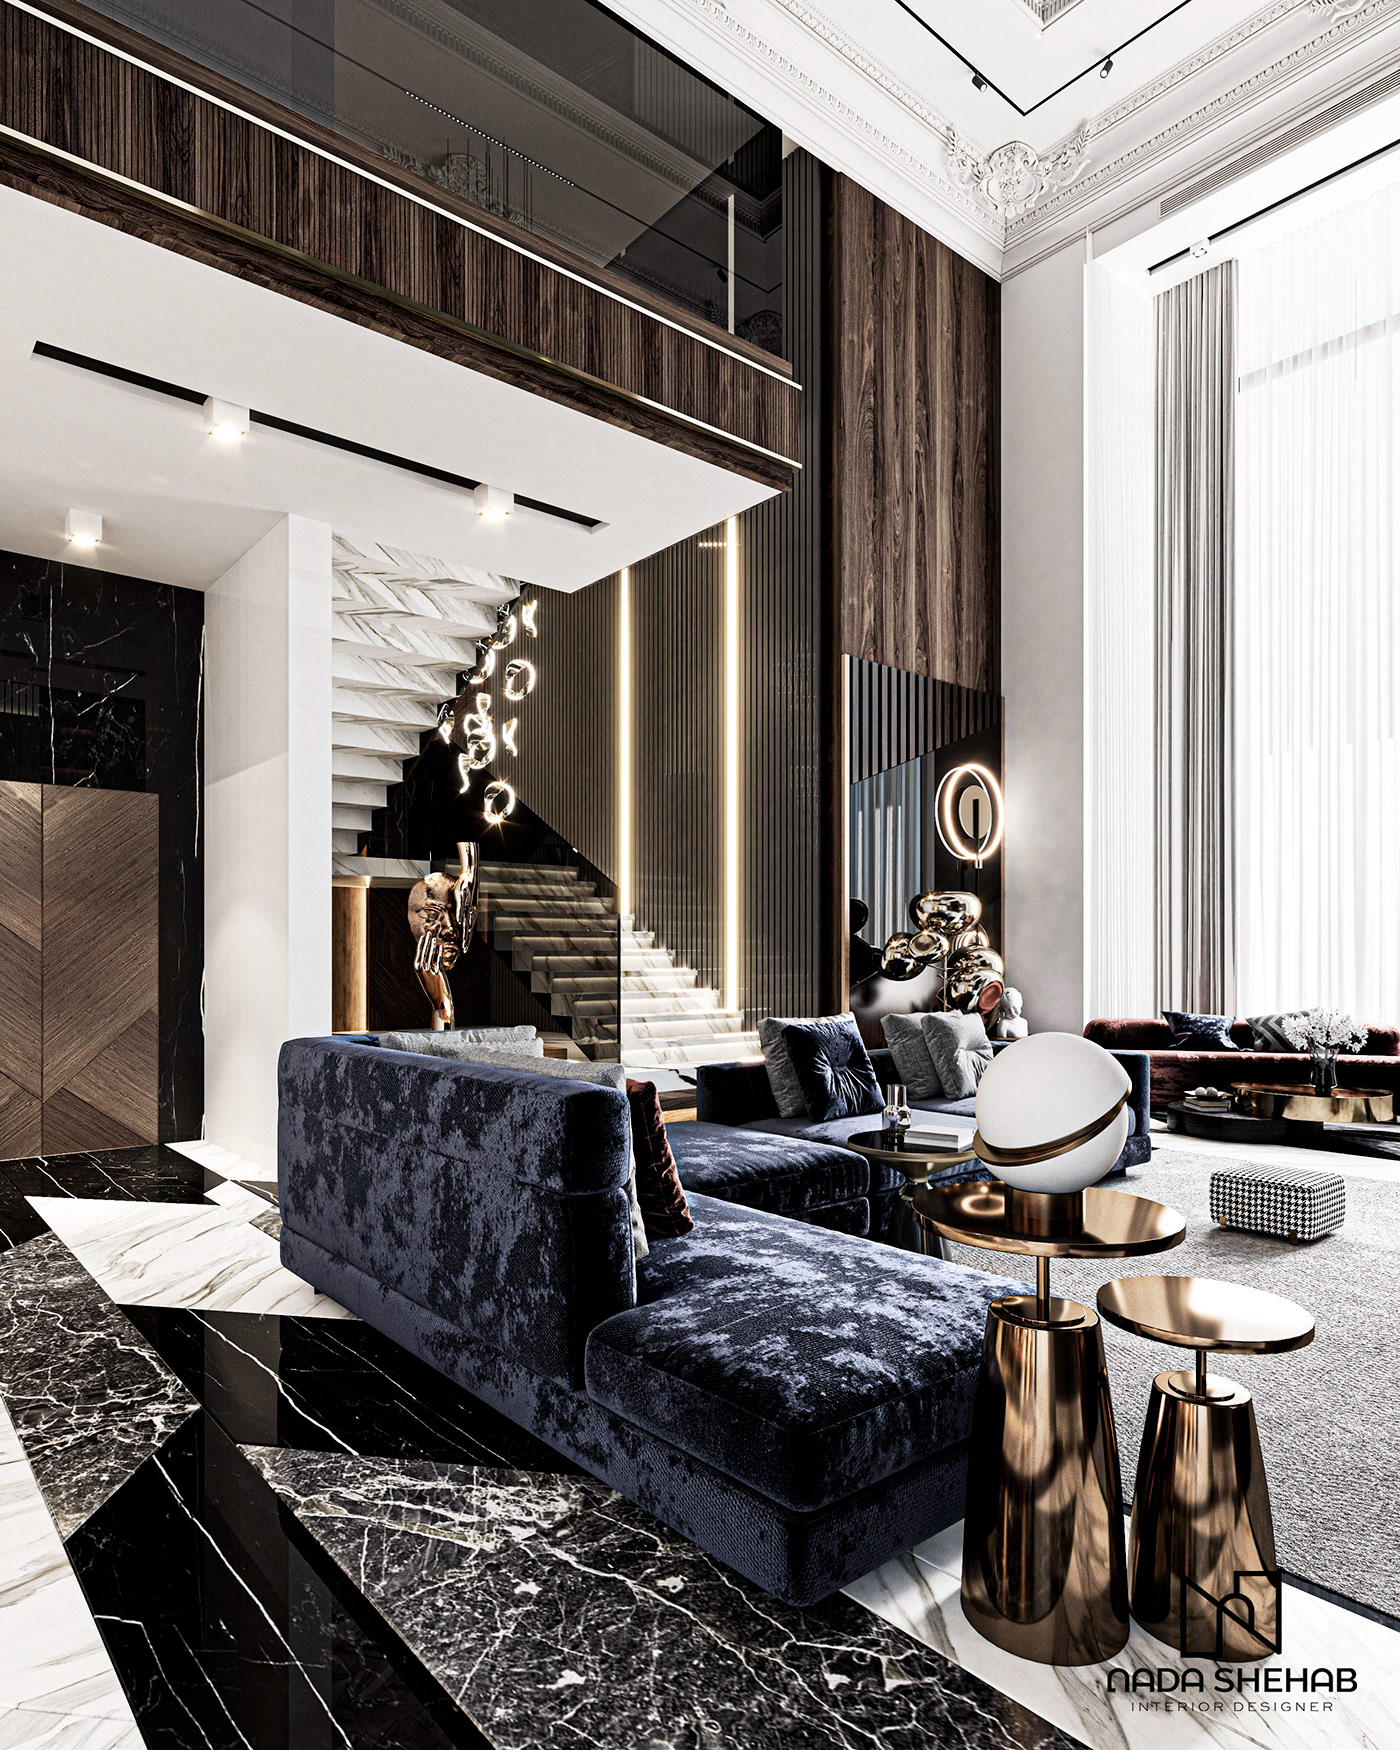 architecture CGI decor dubai furniture Interior interiordesign luxury Luxury Design Photography 